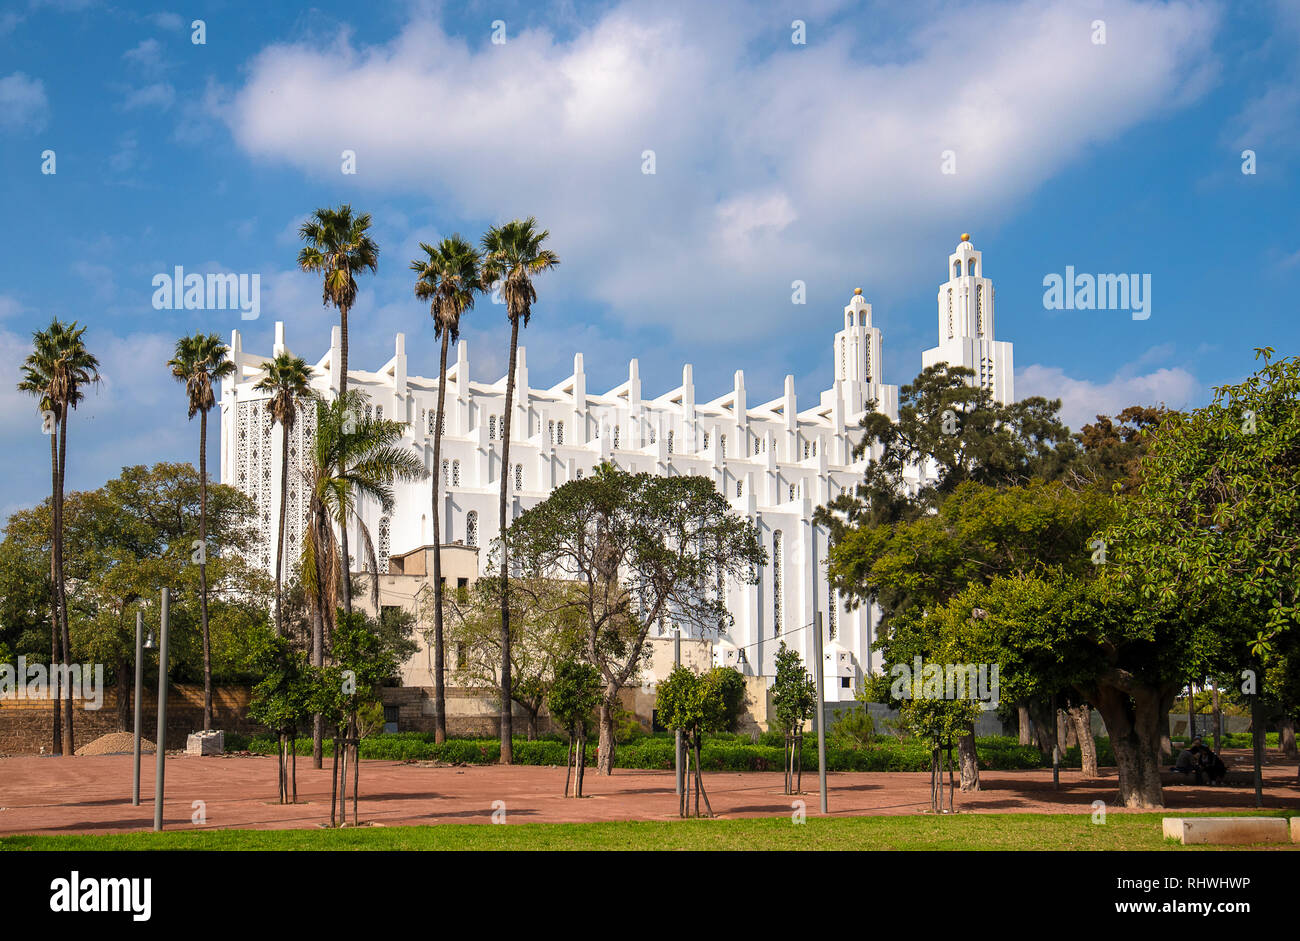 La ex chiesa Cattolica del Sacro Cuore di Gesù a Casablanca, in Marocco, costruito nel 1930. La bianca cattedrale ha cessato la sua funzione religiosa Foto Stock